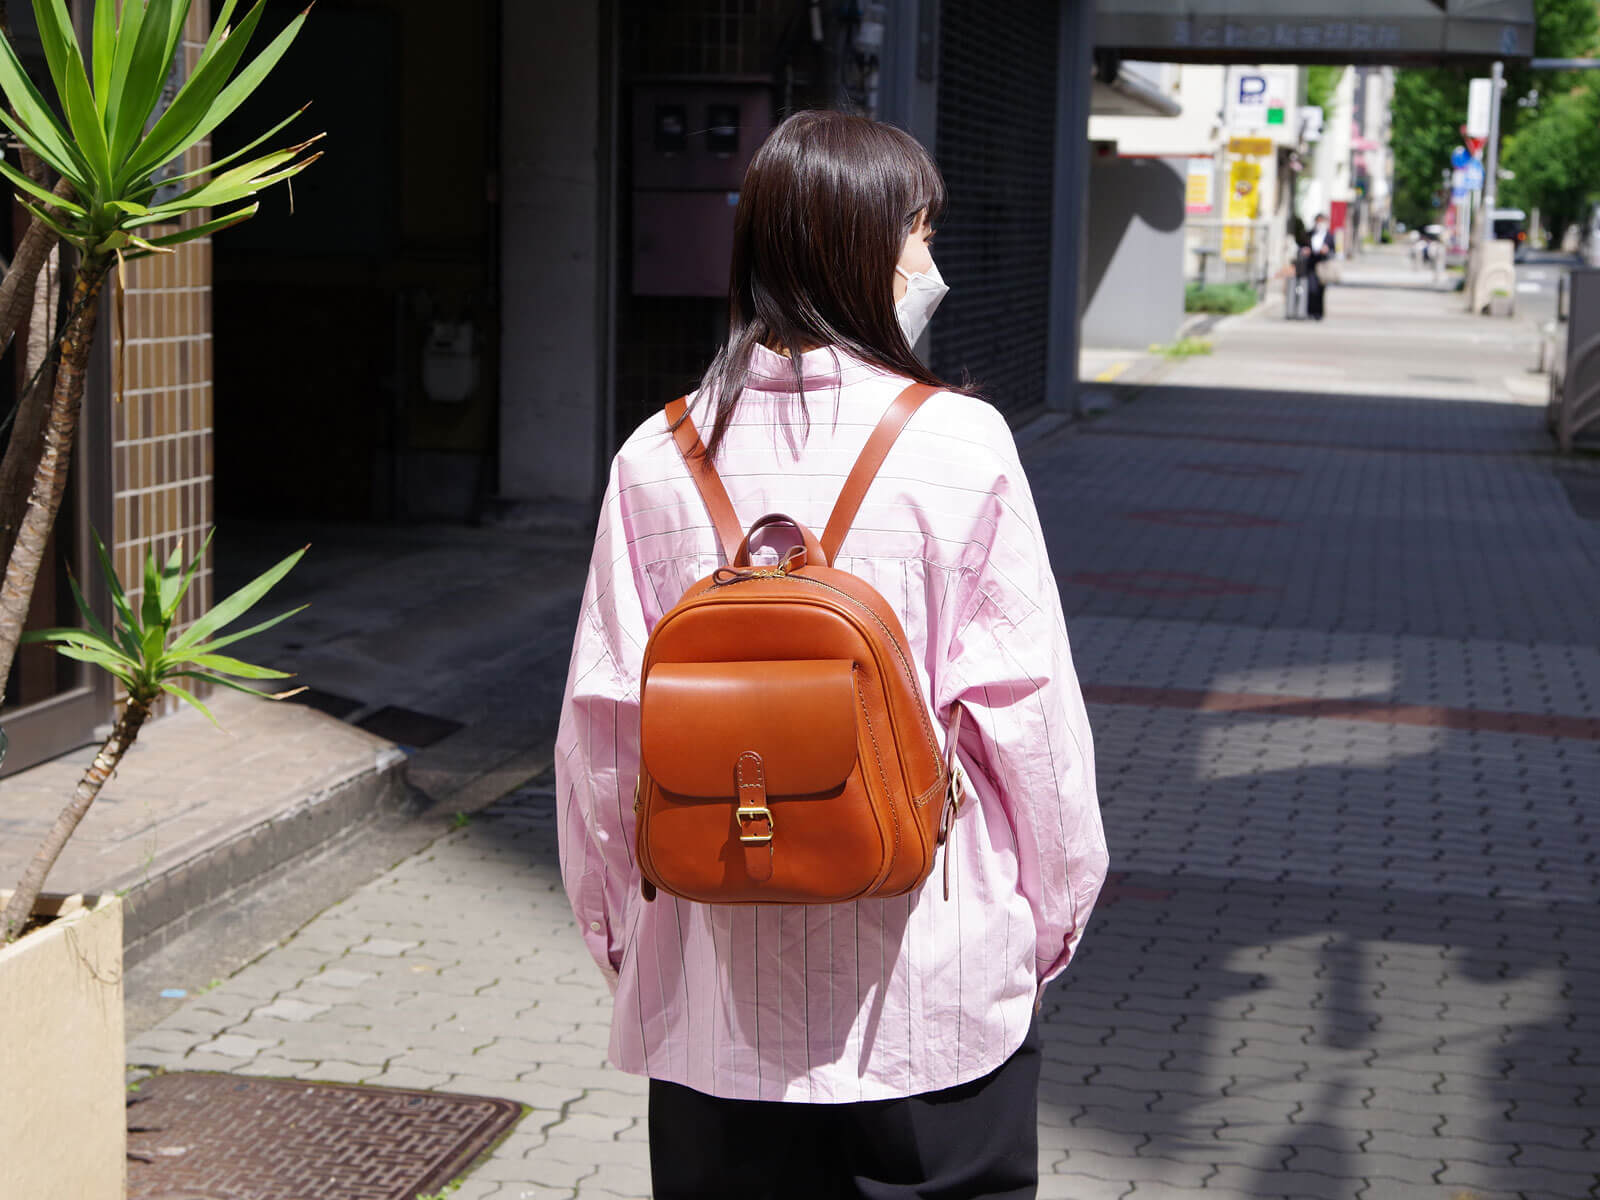 名古屋店新入社員の林が選ぶおすすめのヘルツの鞄と小物